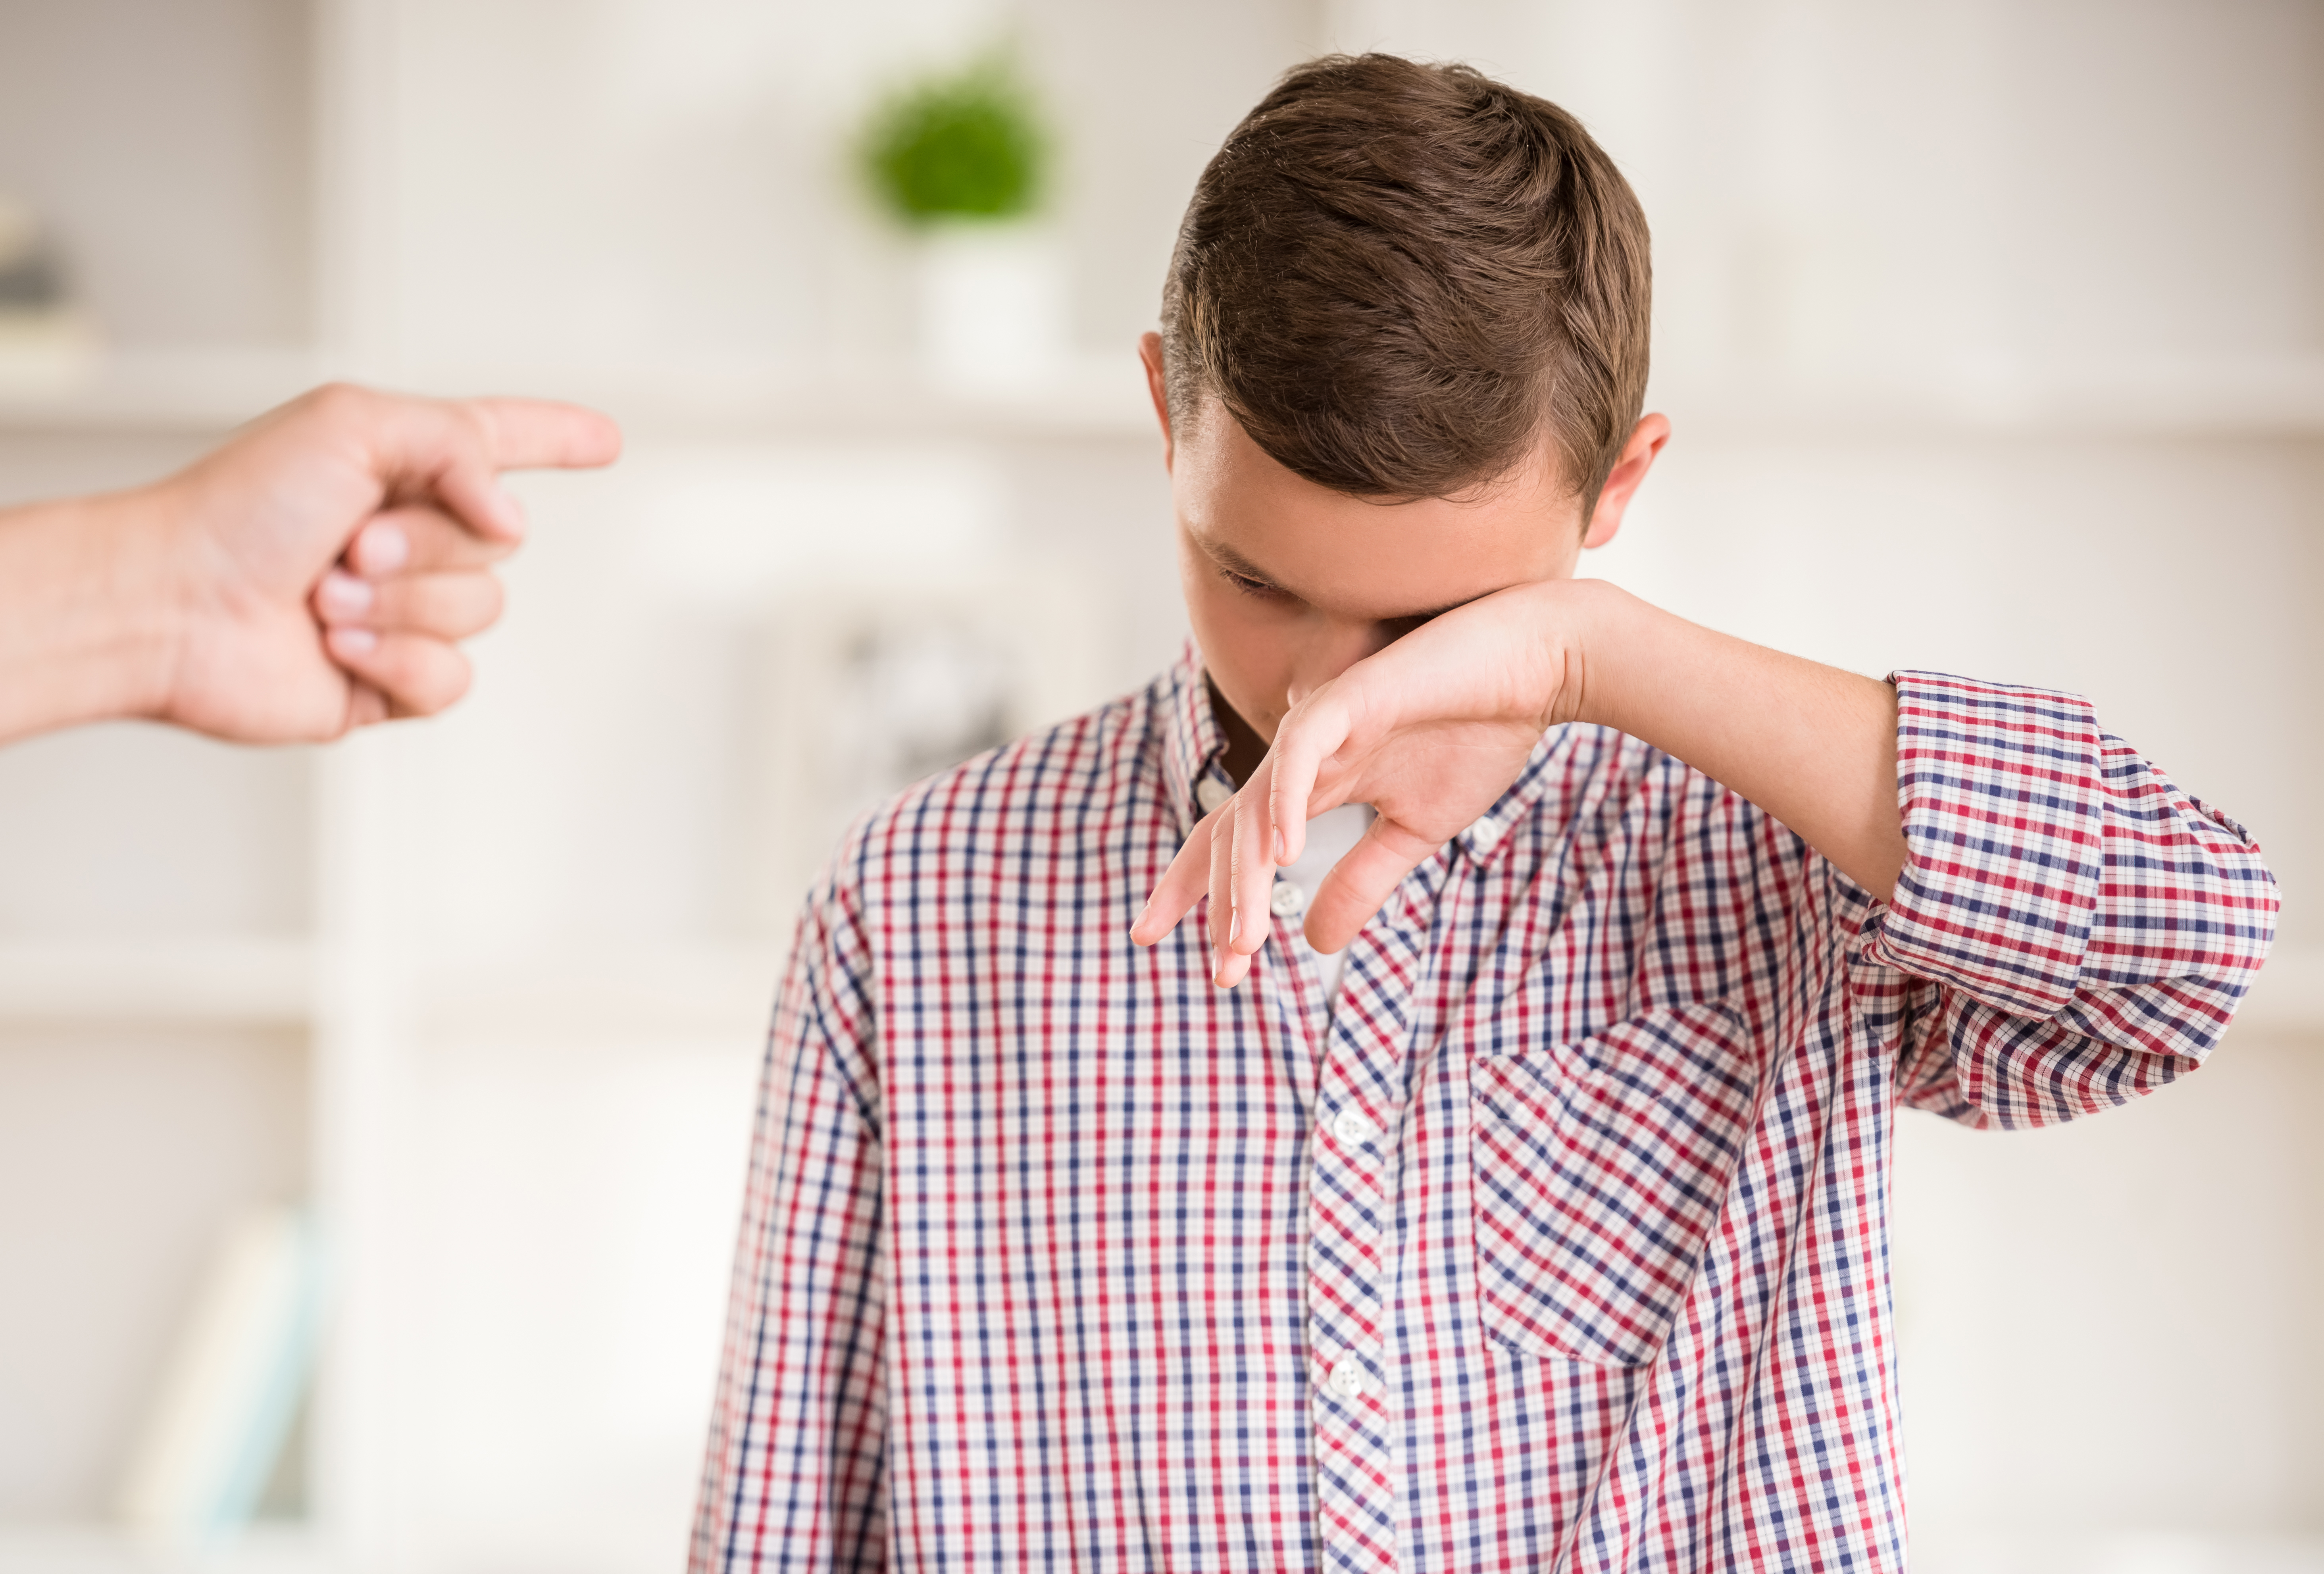 Ein Junge, der zu weinen scheint, während ein Finger auf ihn gerichtet wird | Quelle: Shutterstock